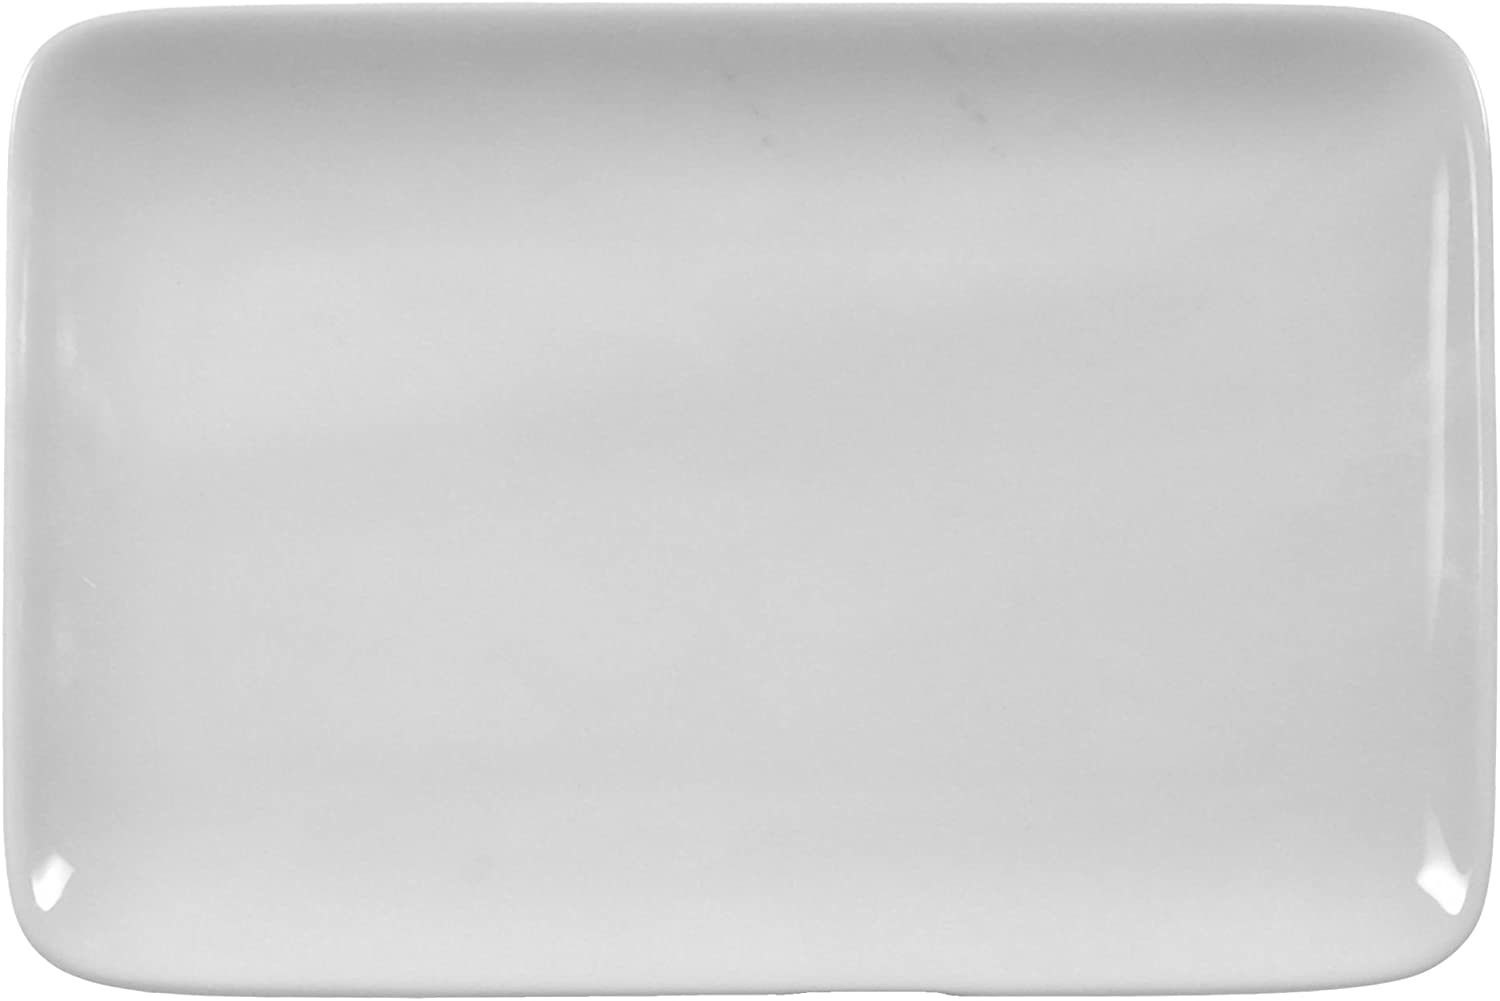 Butter Plate 17.6 cm Compact white universal Collar by Seltmann Weiden